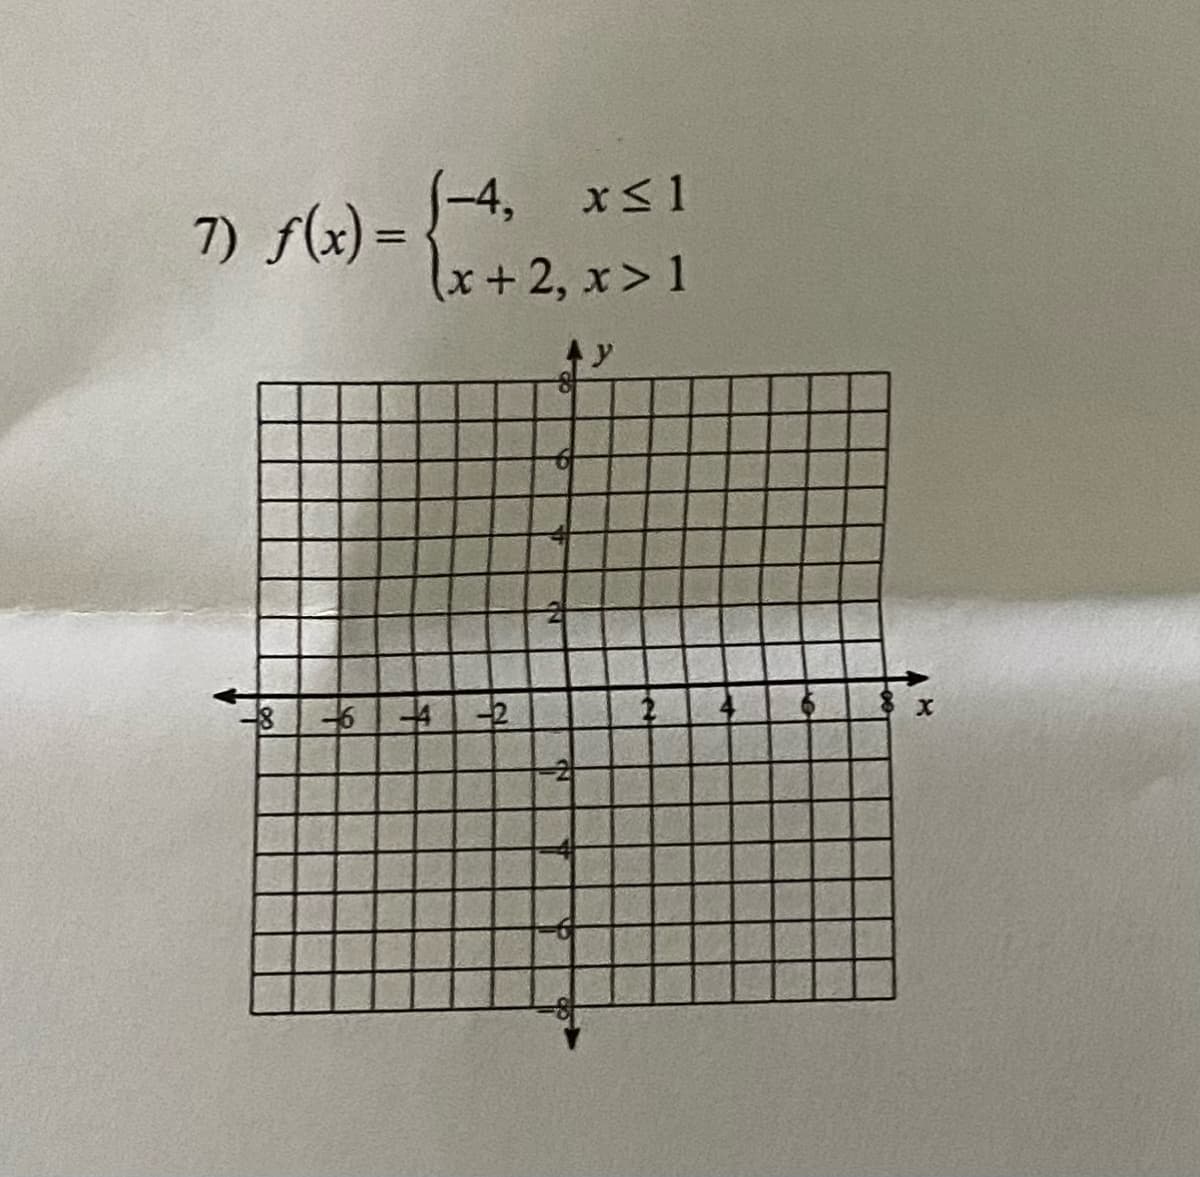 1-4, xs1
7) f(x) =
%3D
x+2, x> 1
土
